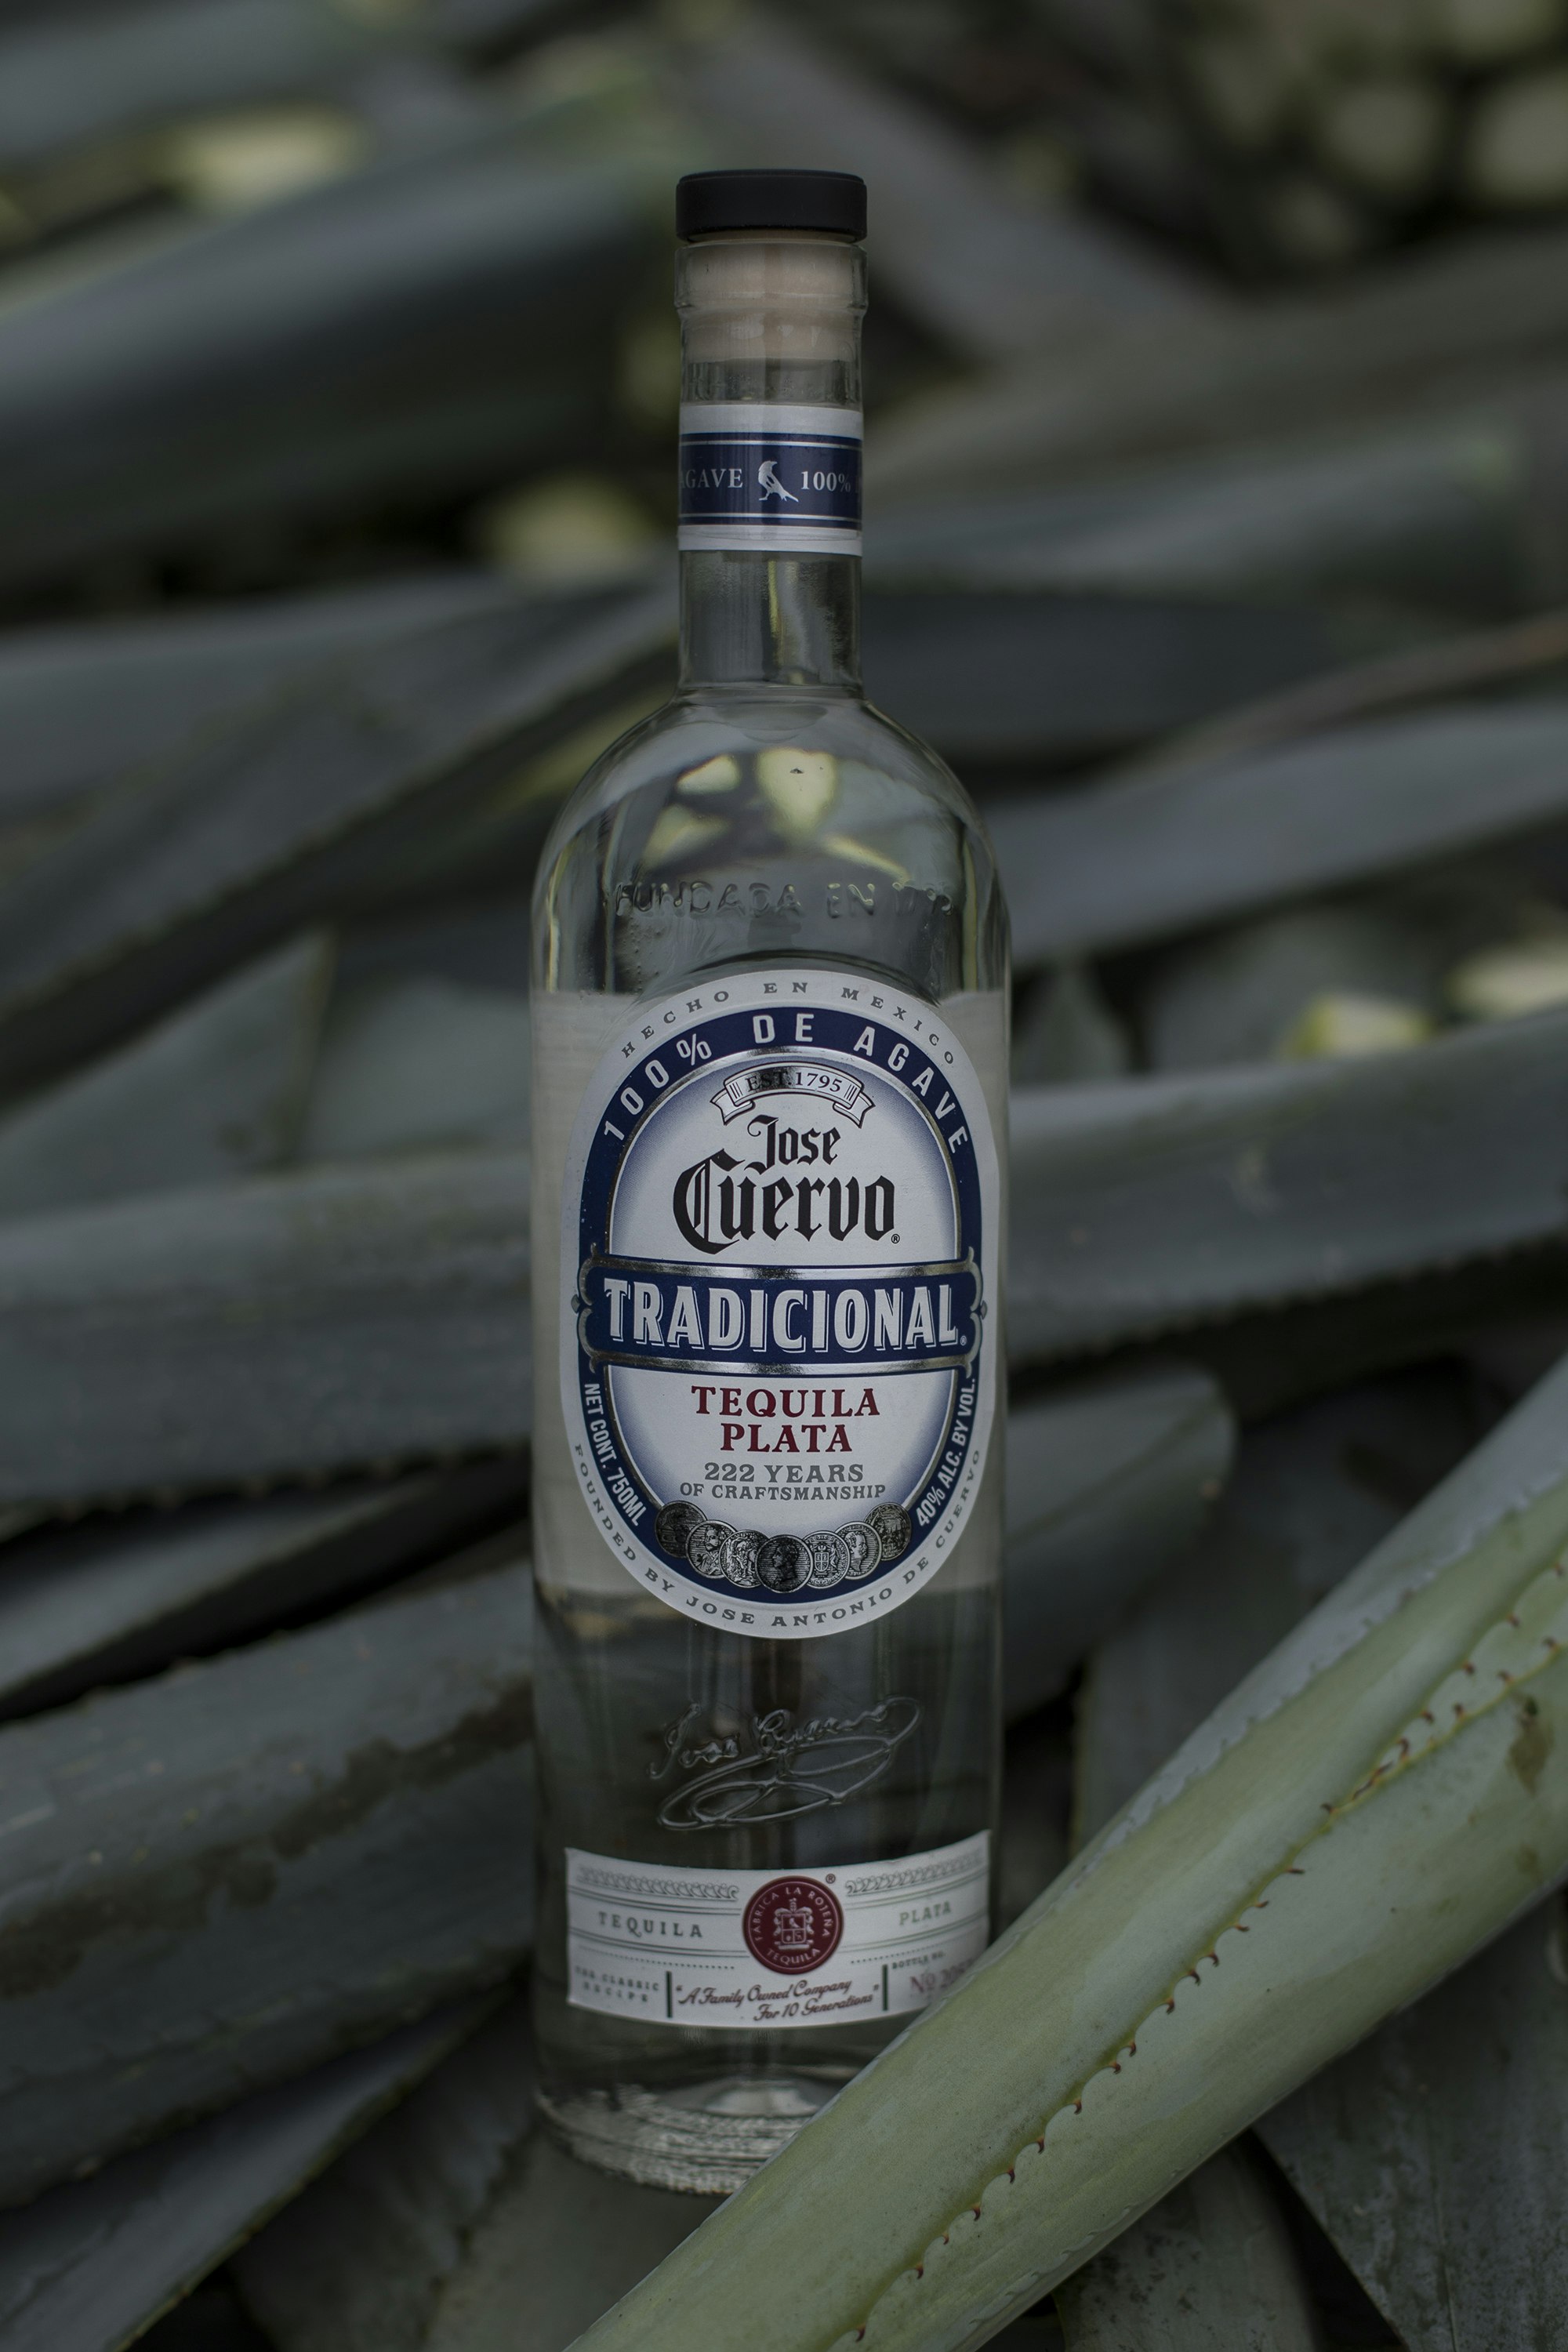 Jose Cuervo bottle of tequila.jpg